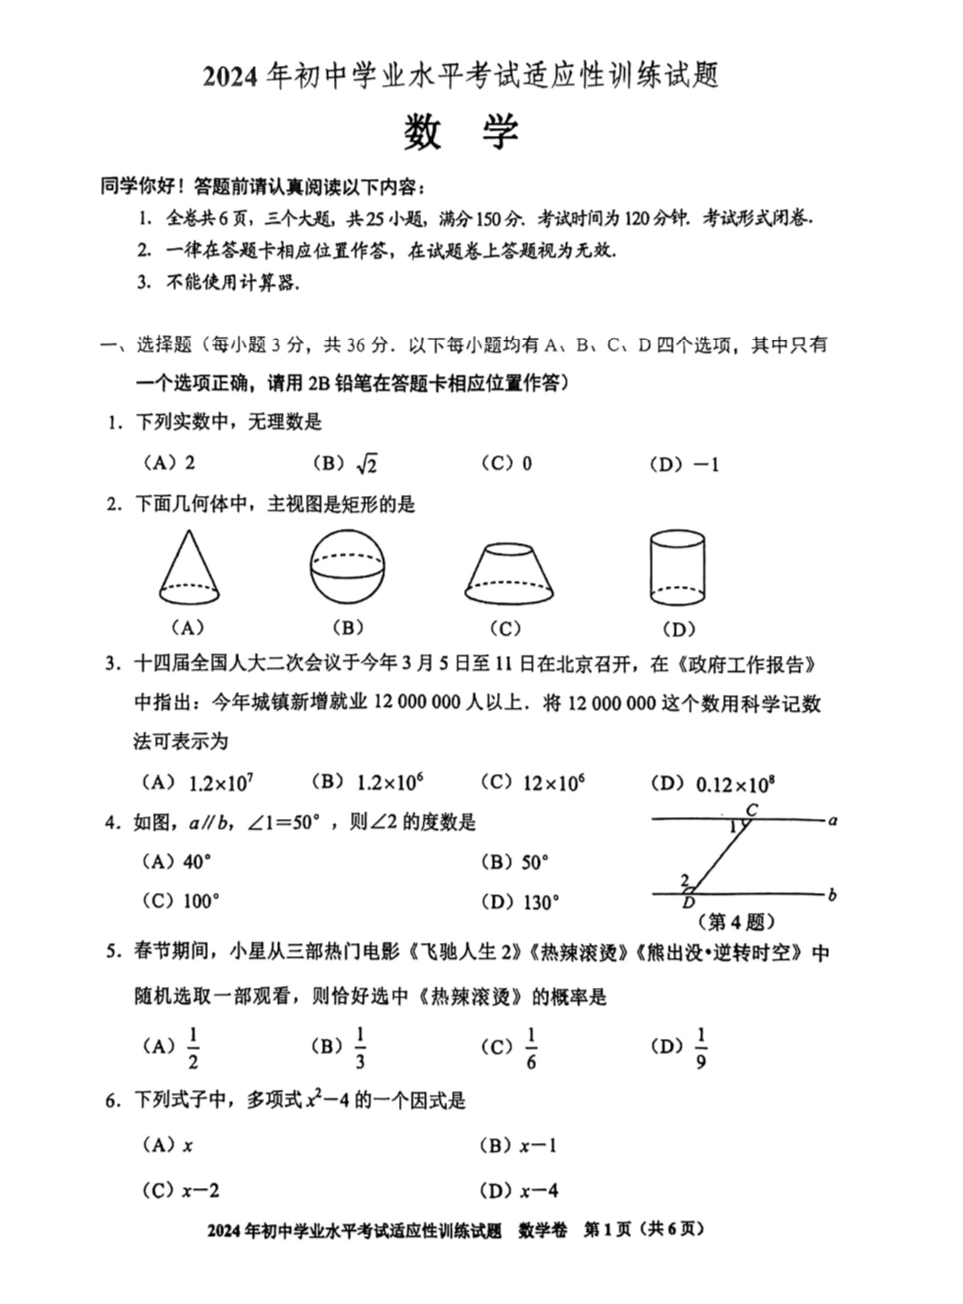 2024贵州省中考适应性考试全科试卷原题 第9张